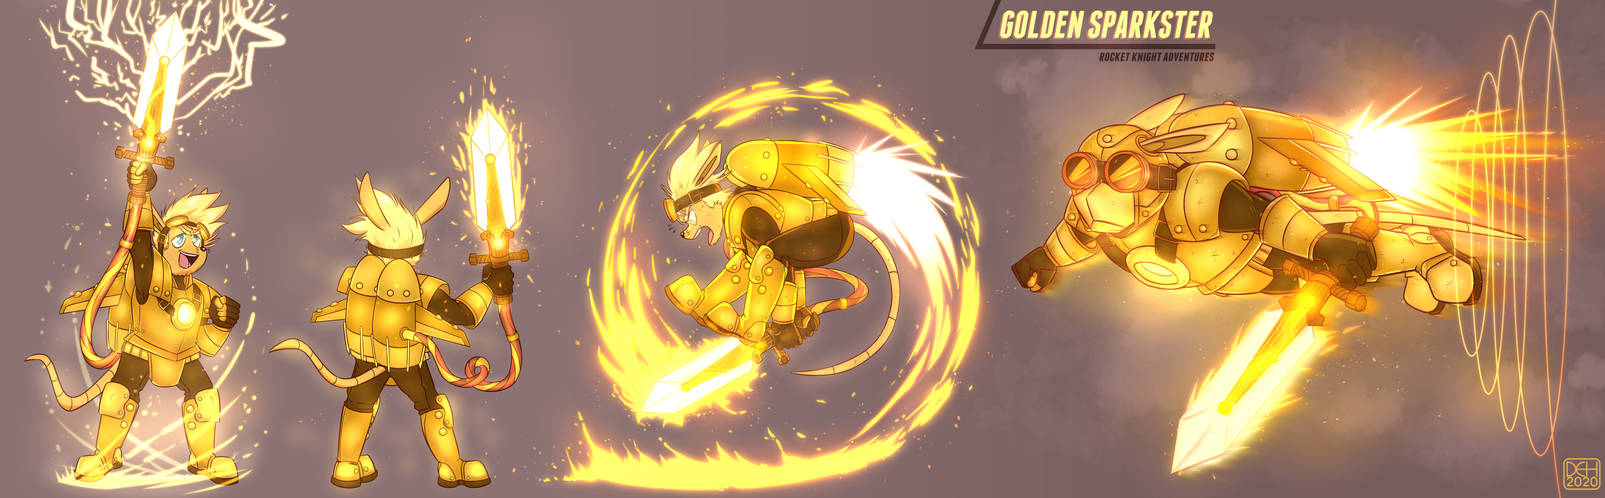 Commission - Golden Sparkster